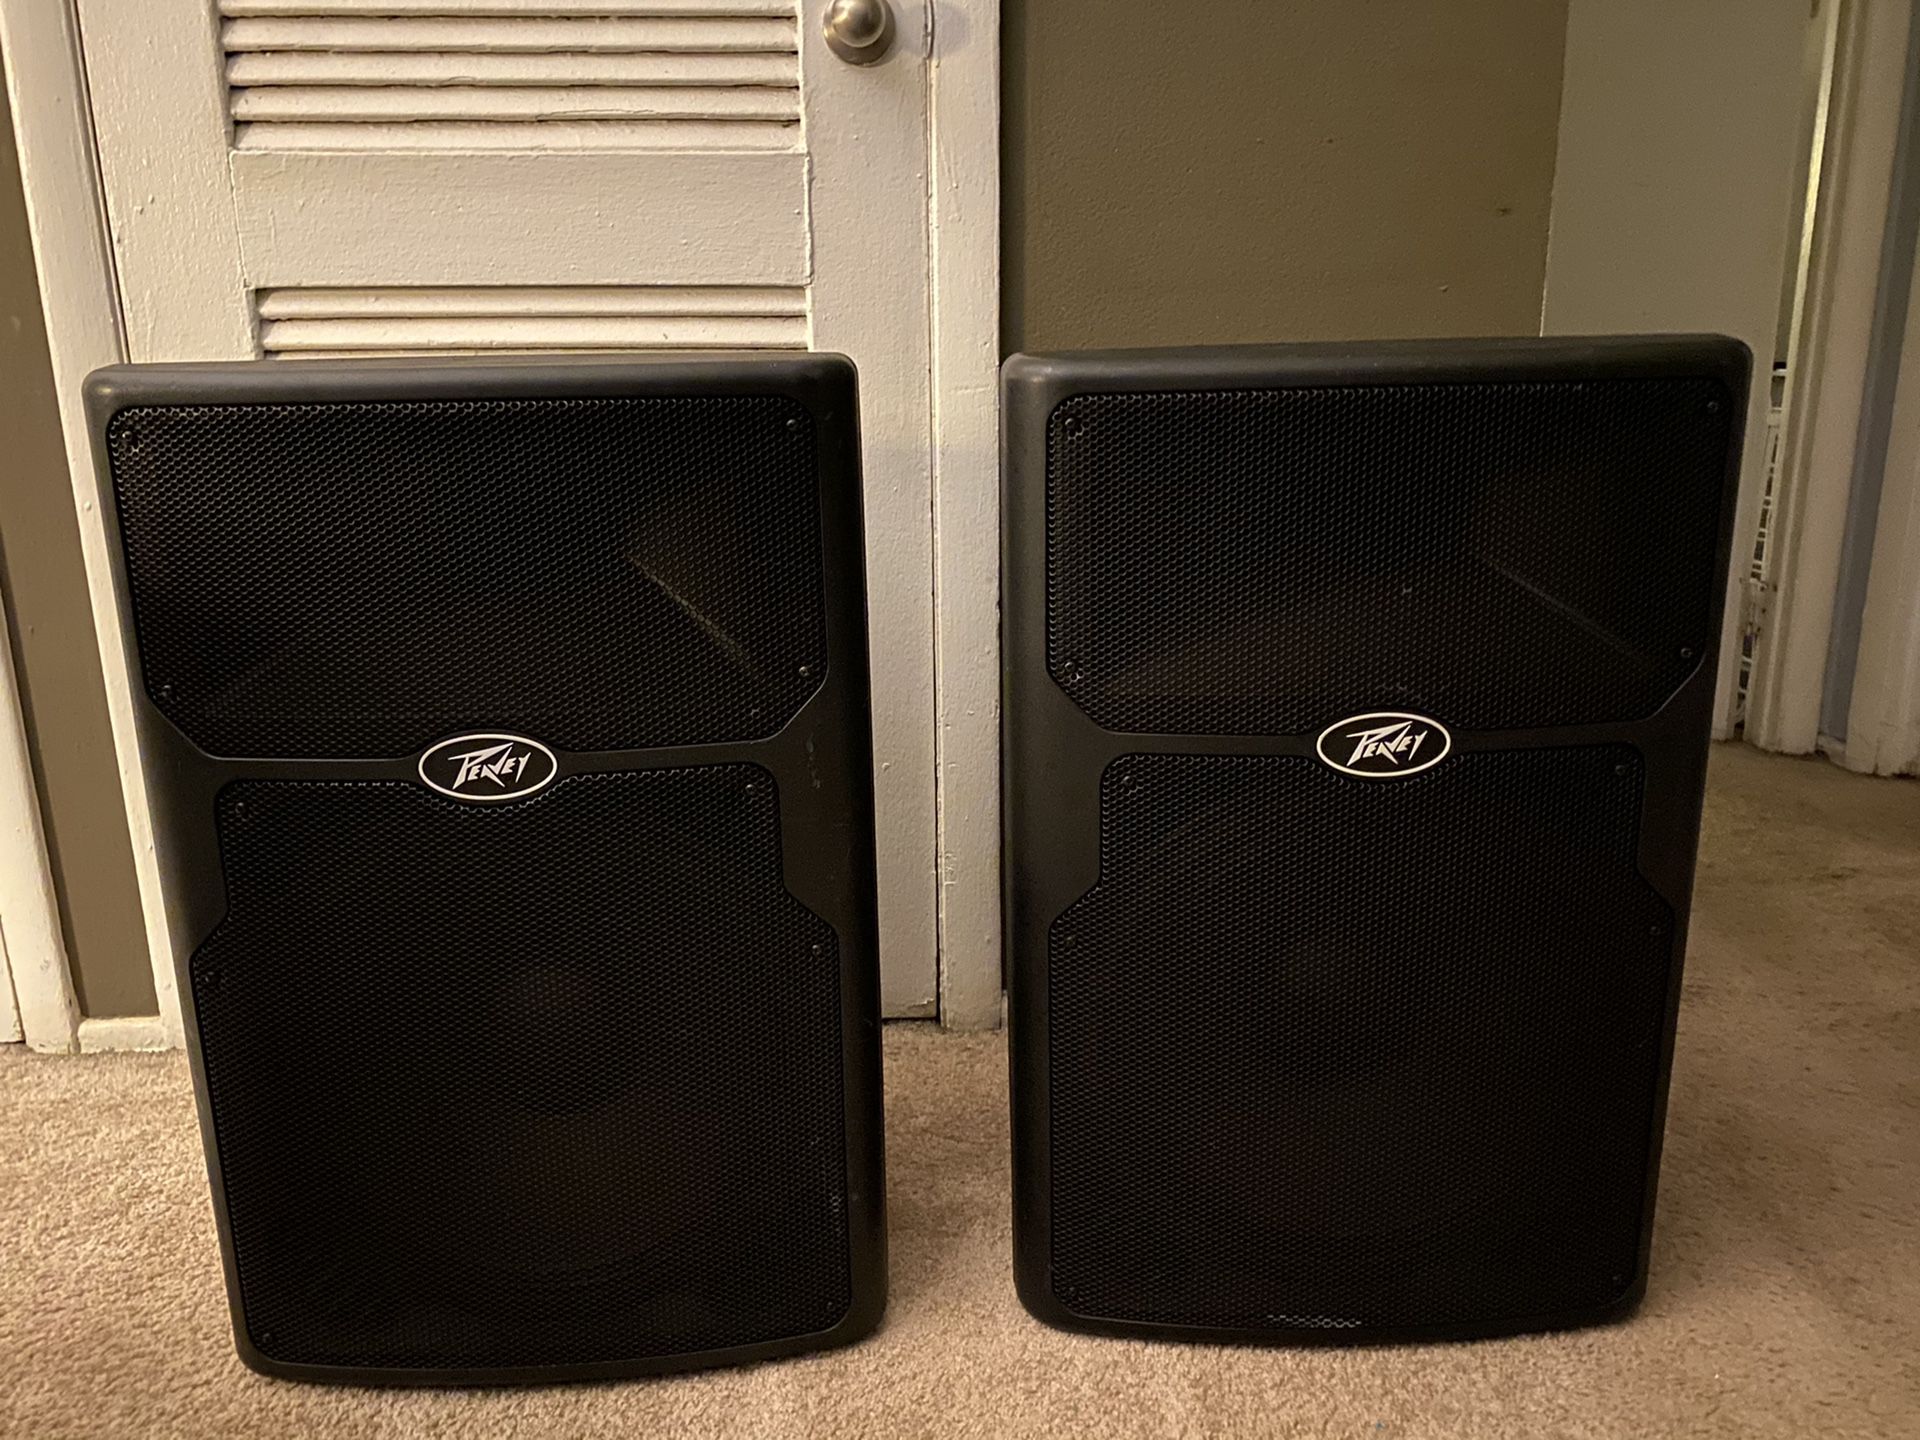 Two Peavey 15” powered speakers